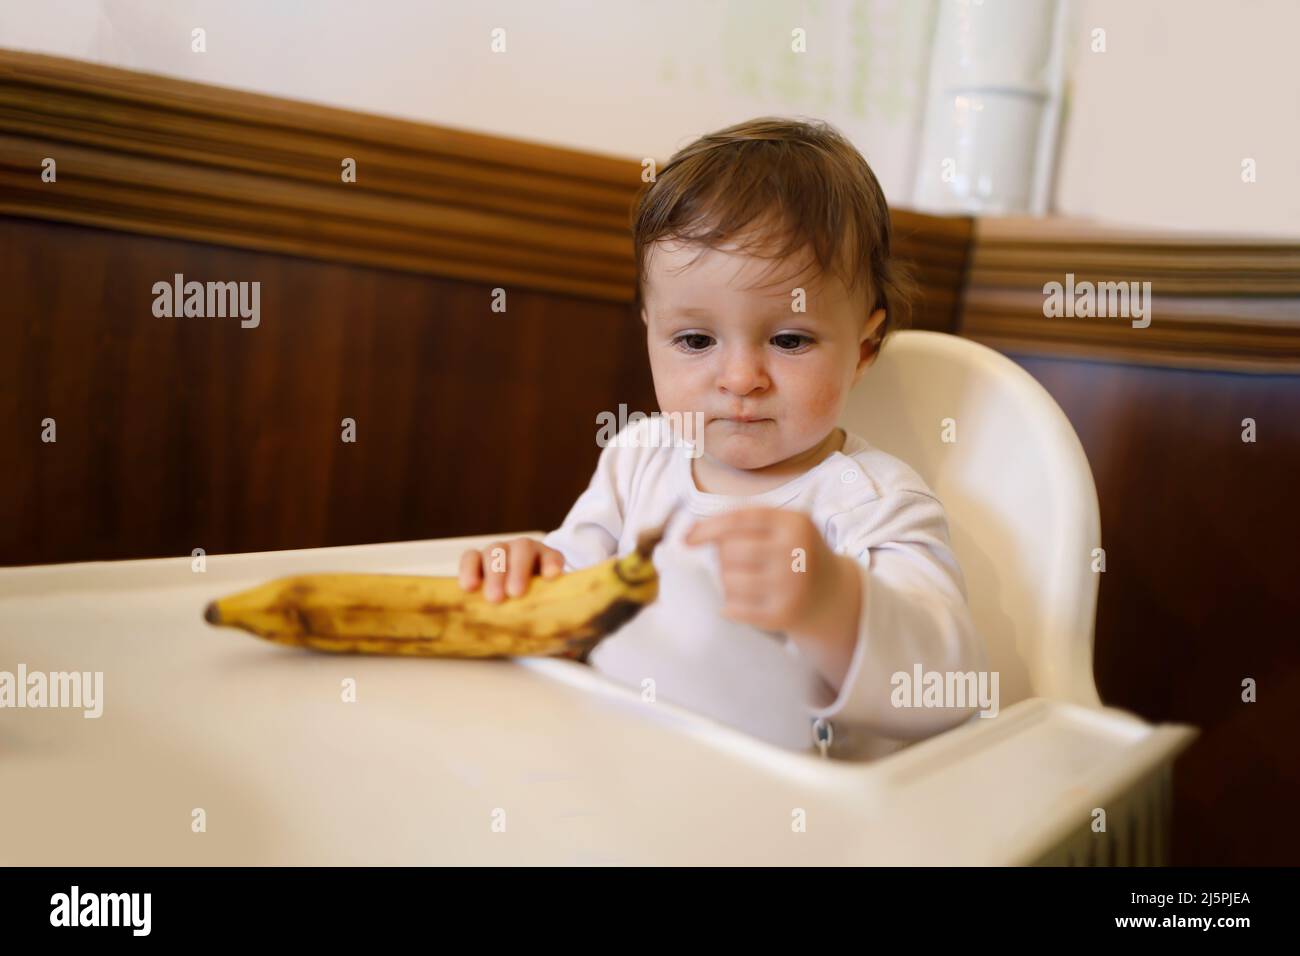 Kleines Kind, das am Esstisch sitzt und mit einer Banane spielt Stockfoto